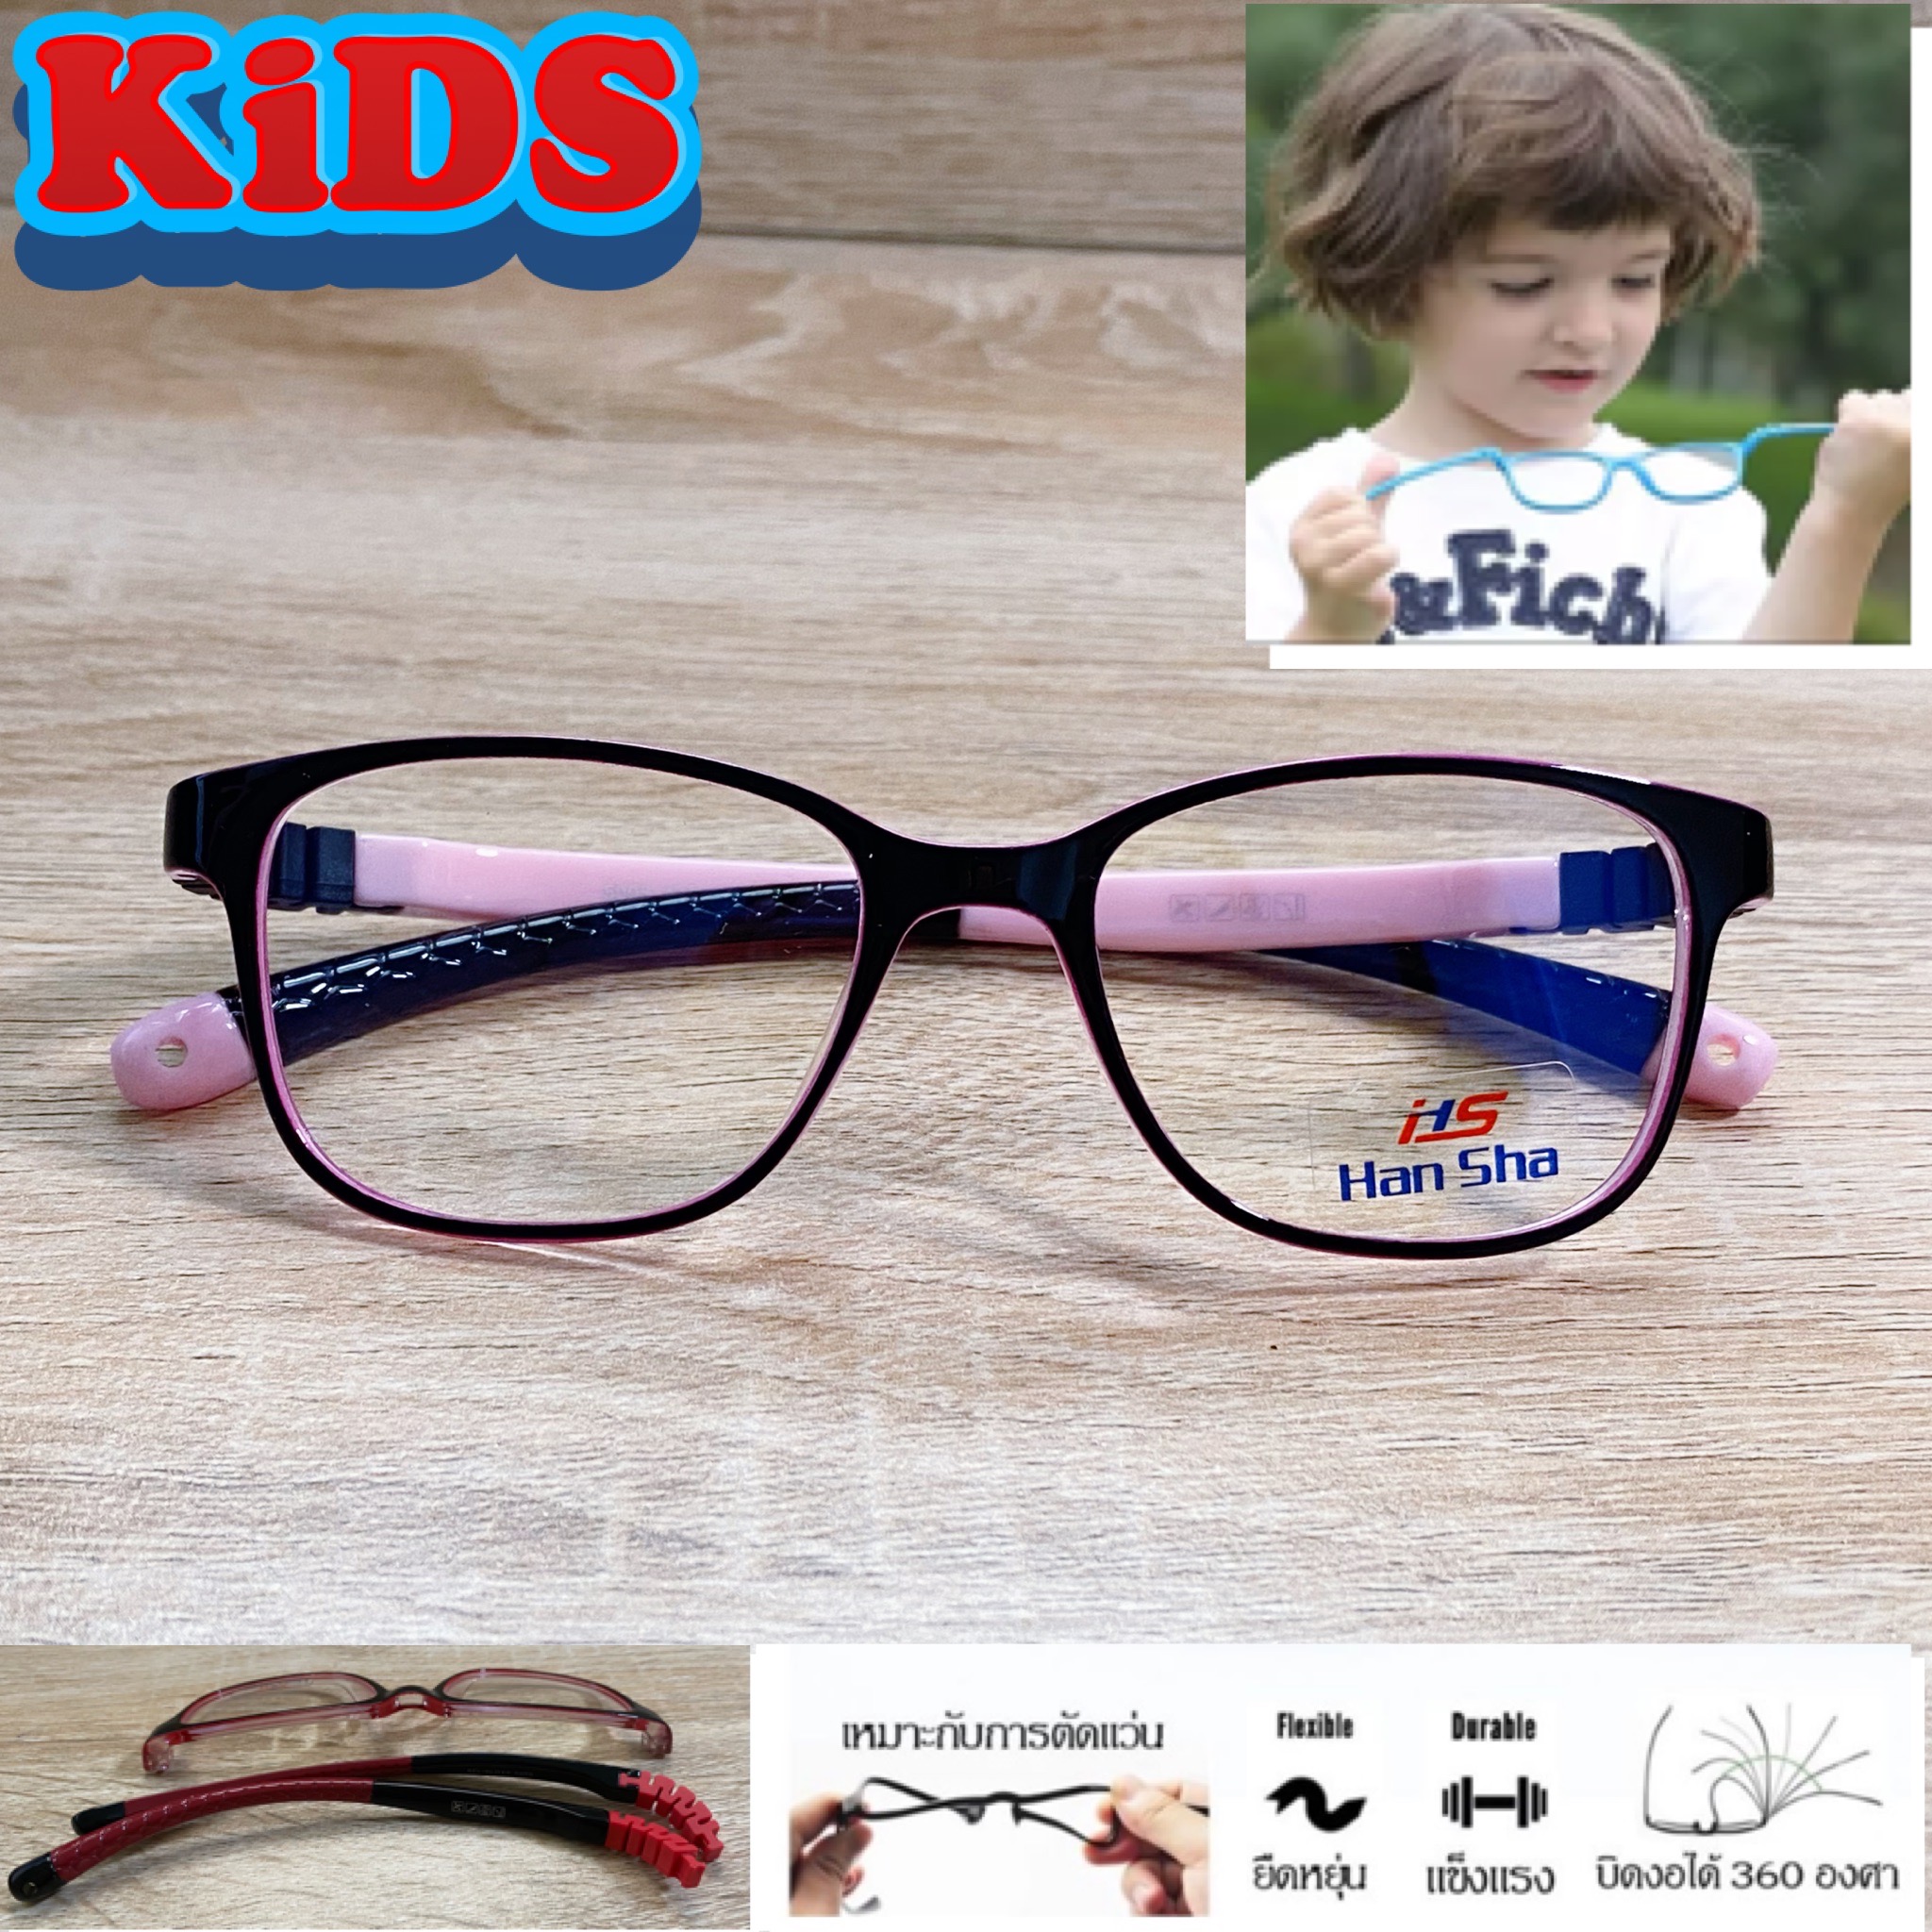 แว่นตาเด็ก กรอบแว่นตาเด็ก สำหรับตัดเลนส์ แว่นตา Han Sha รุ่น 5005 สีดำตัดชมพู ขาไม่ใช้น็อต ยืดหยุ่น ถอดขาเปลี่ยนได้ วัสดุ TR 90 เบา ไม่แตกหัก